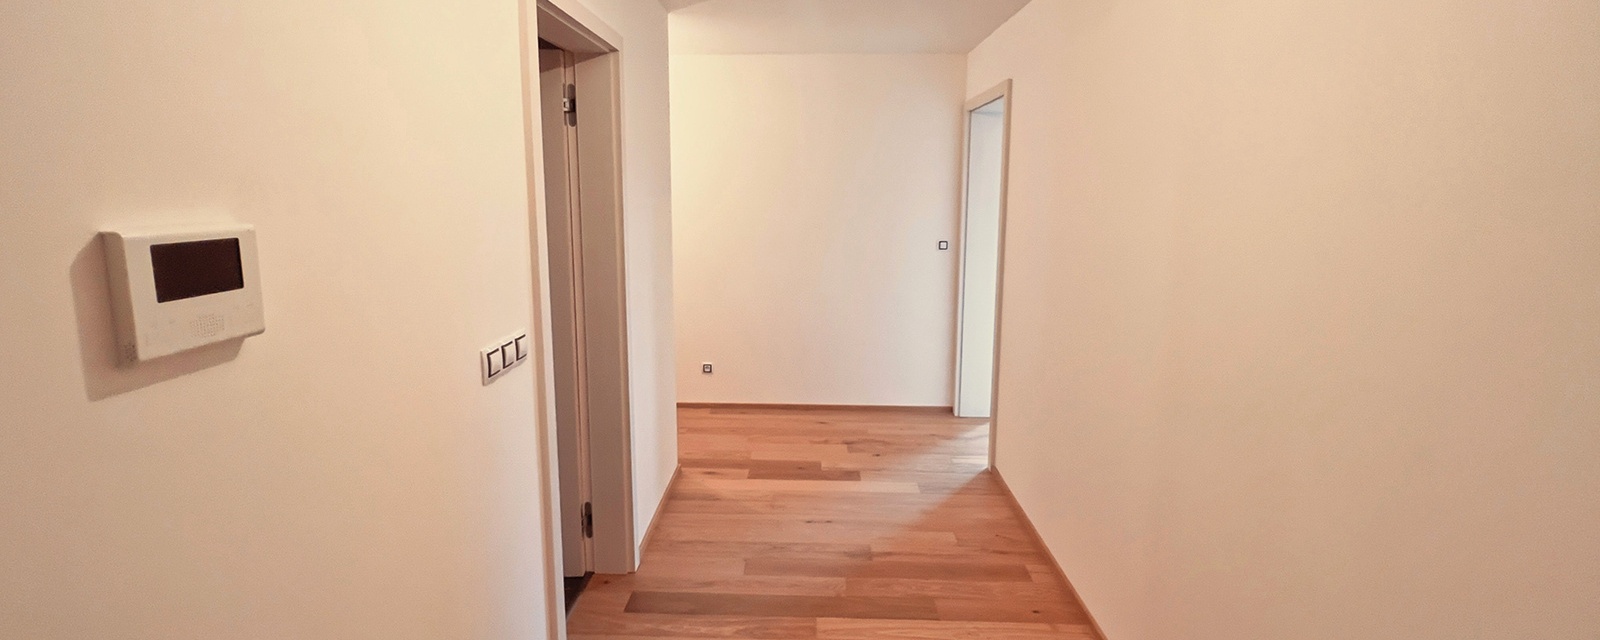 Prodej bytu 3+kk s větším balkonem, 98m² Rezidence Bavaria